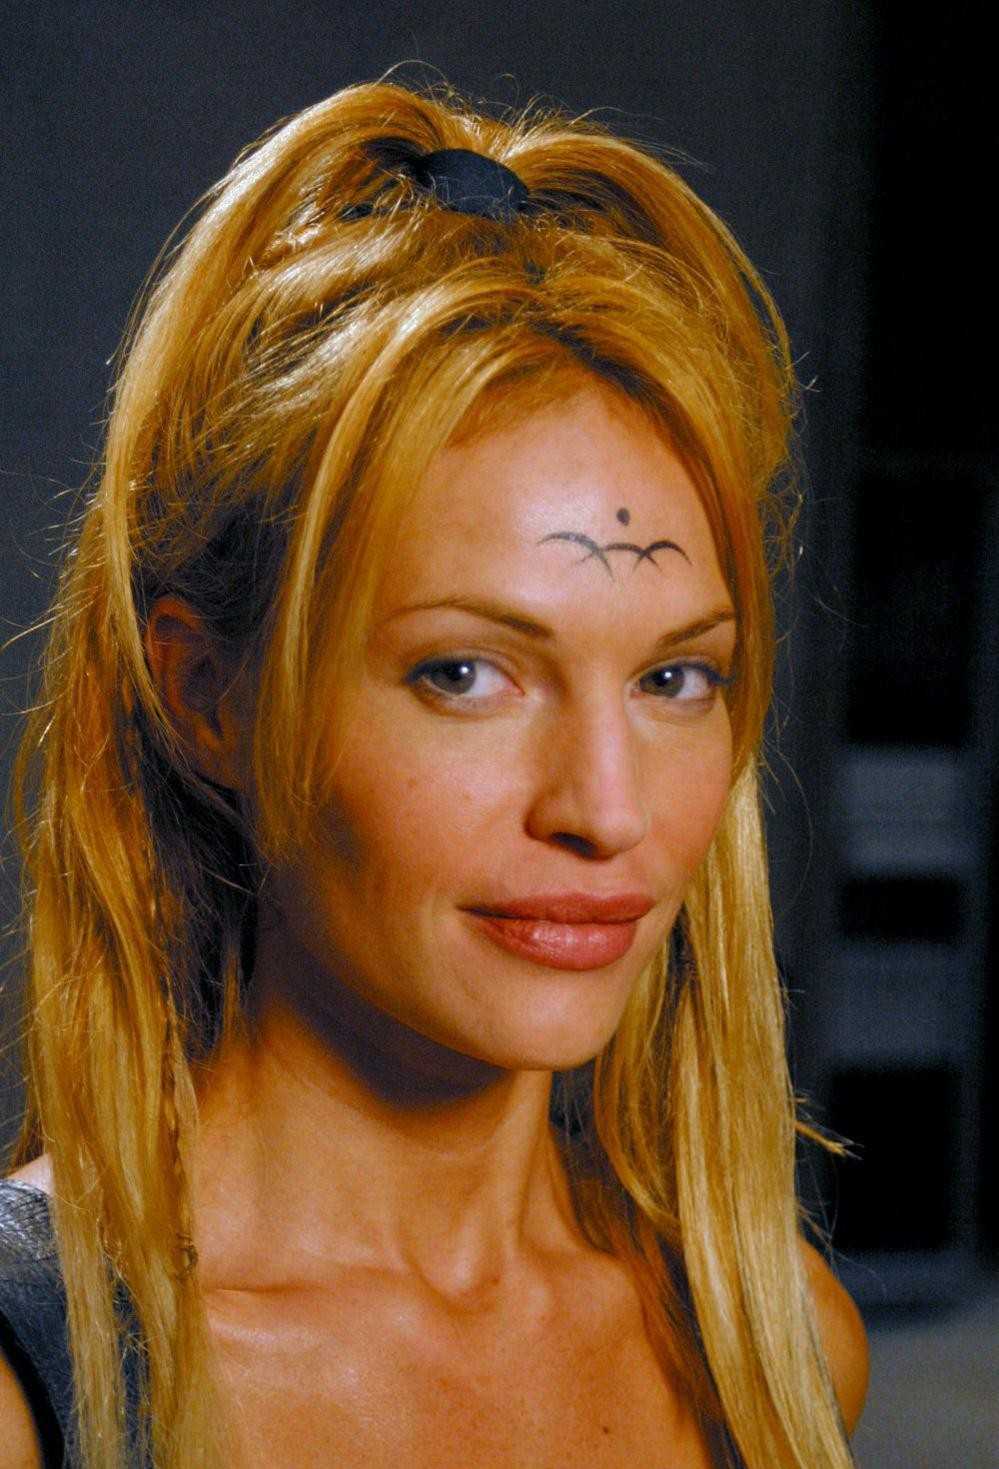 70+ Hot Pictures Of Jolene Blalock – T’pol Of Star Trek Enterprise 3